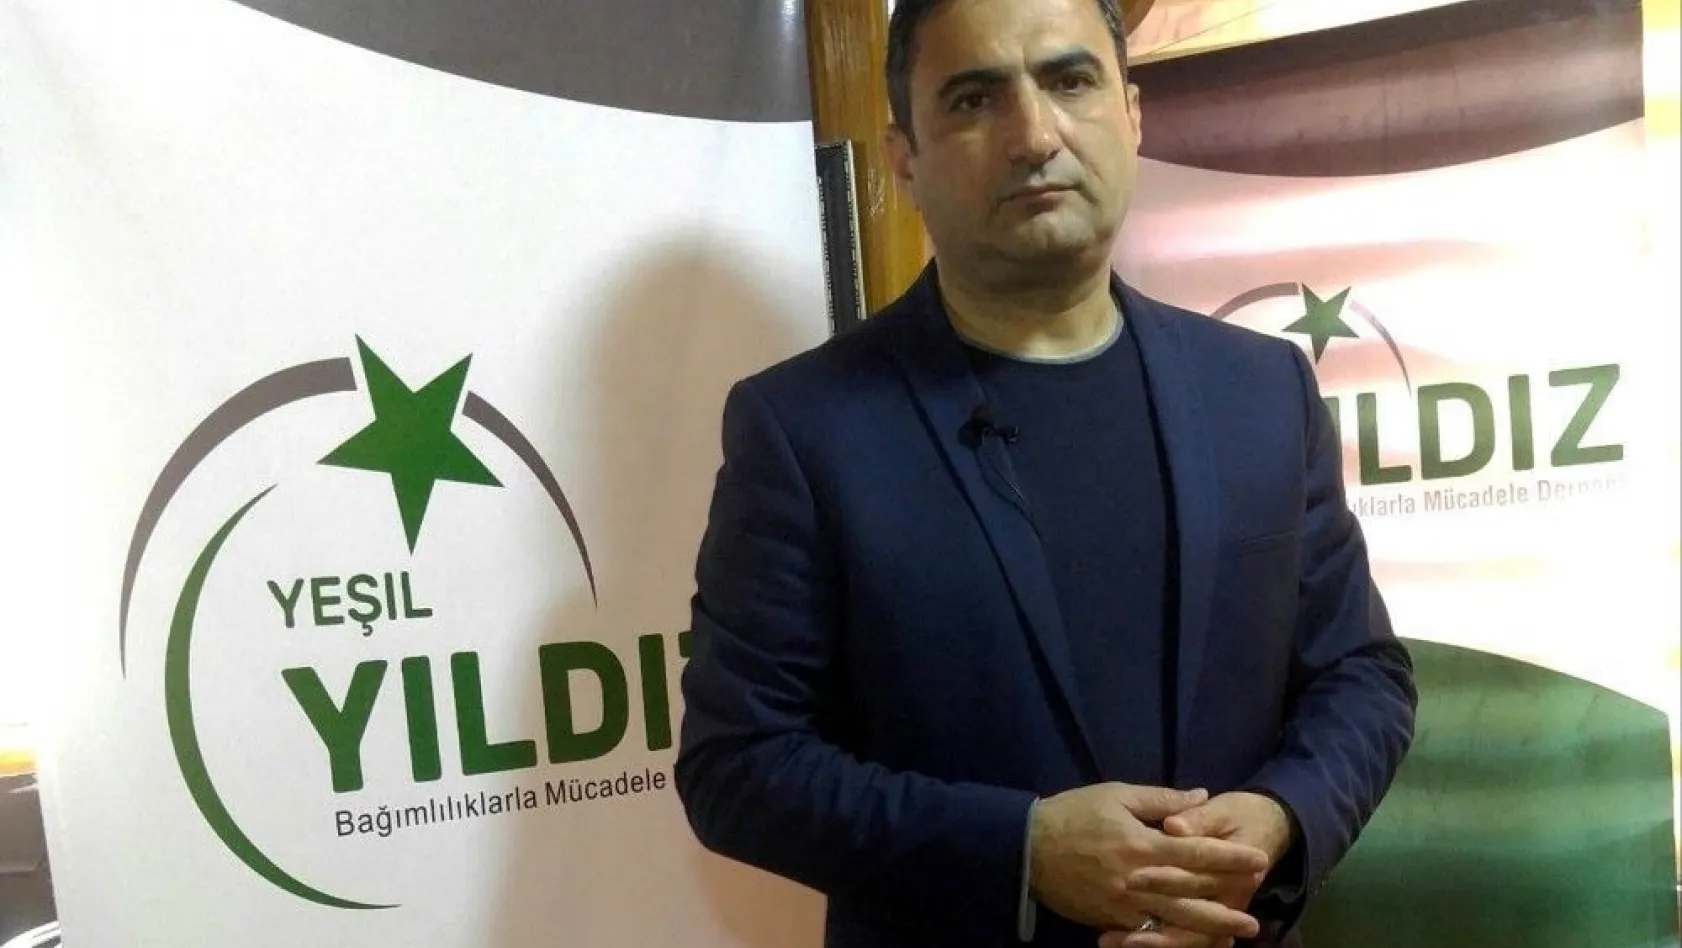 Yeşil Yıldız Derneği Başkanı Yahya Öger: 'Sanal ve gerçek birbirine karıştı'
